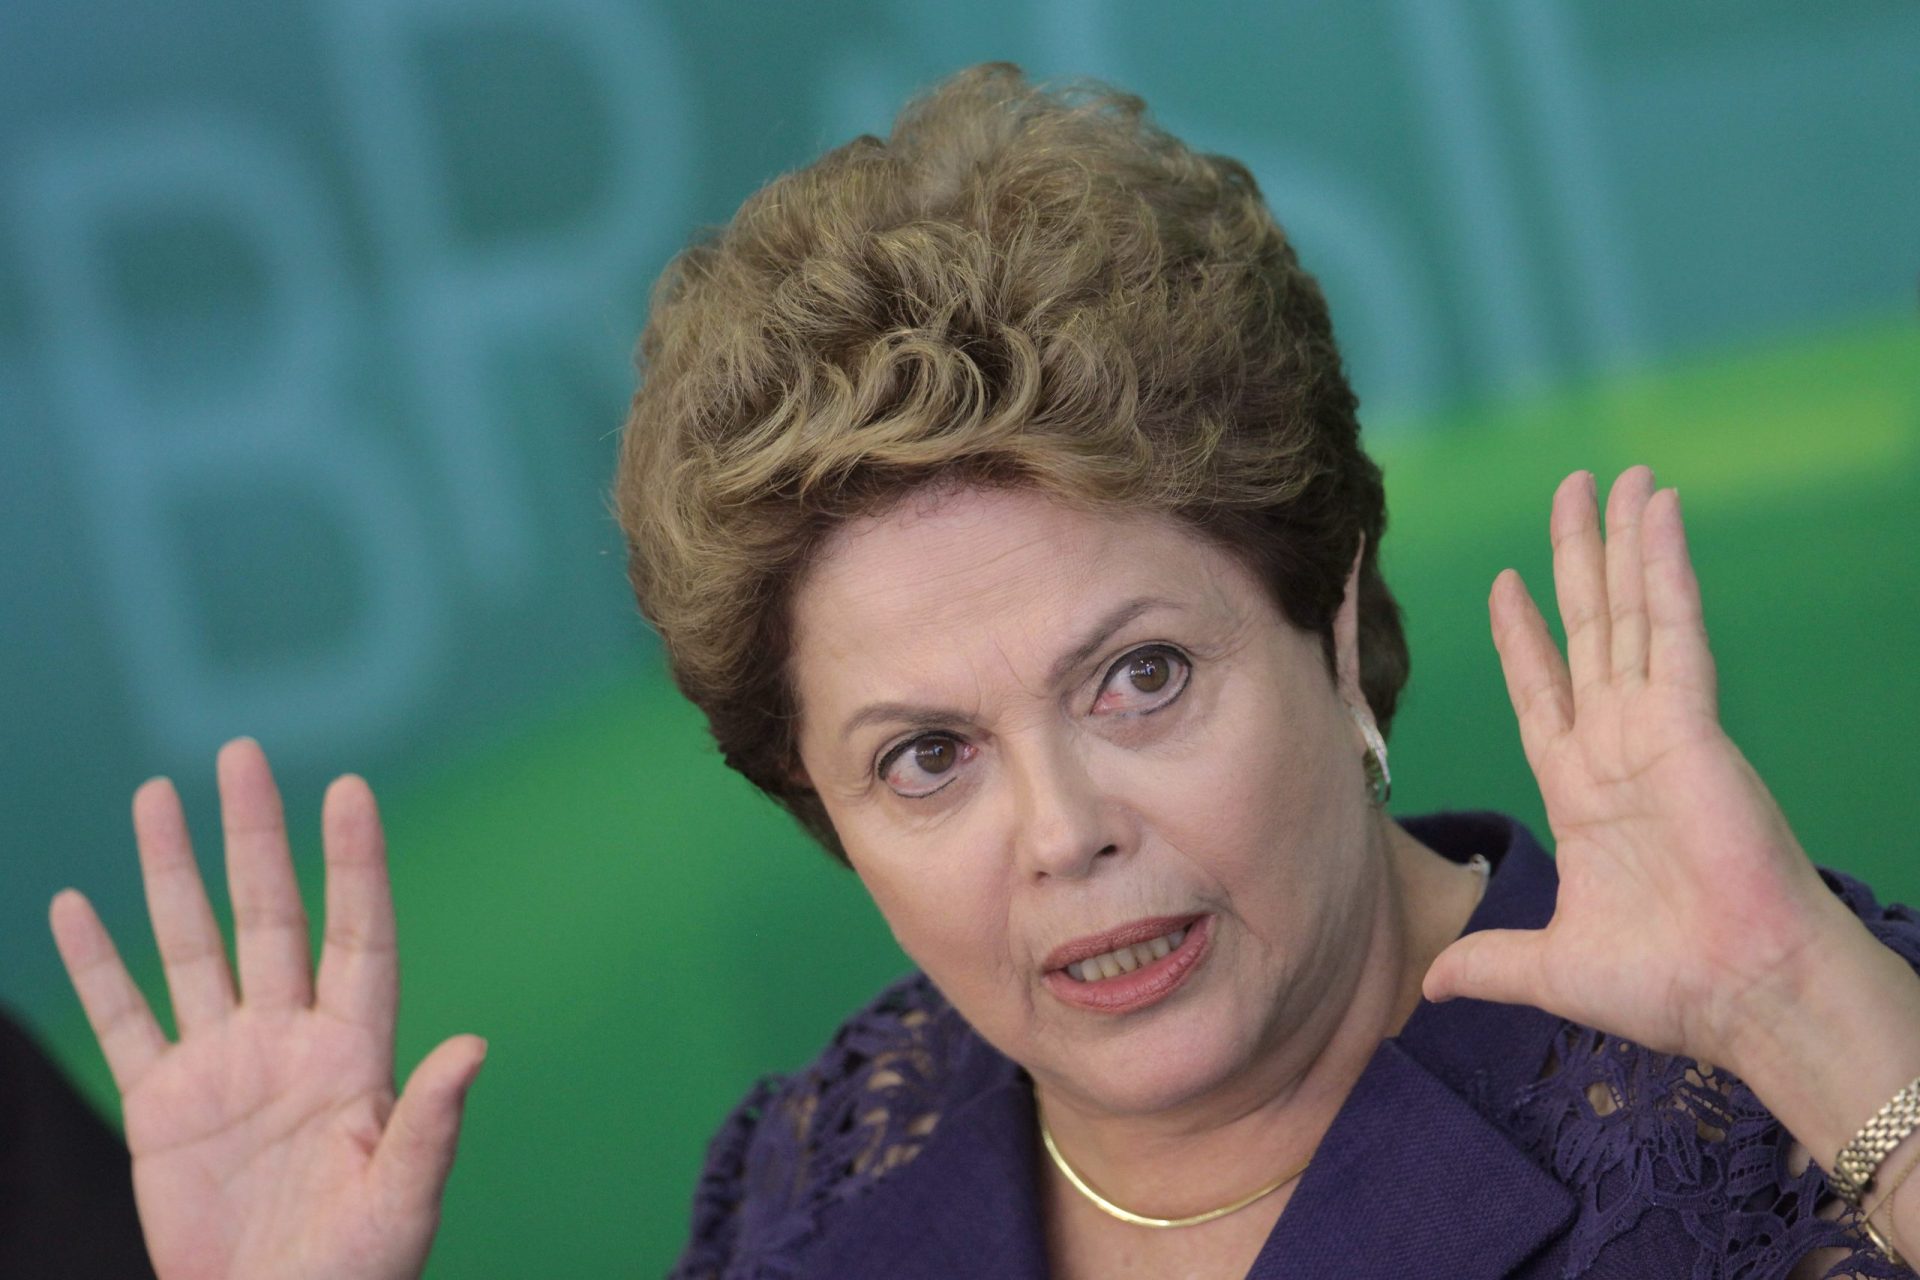 Brasil: dívida soberana e empresas no ‘lixo’